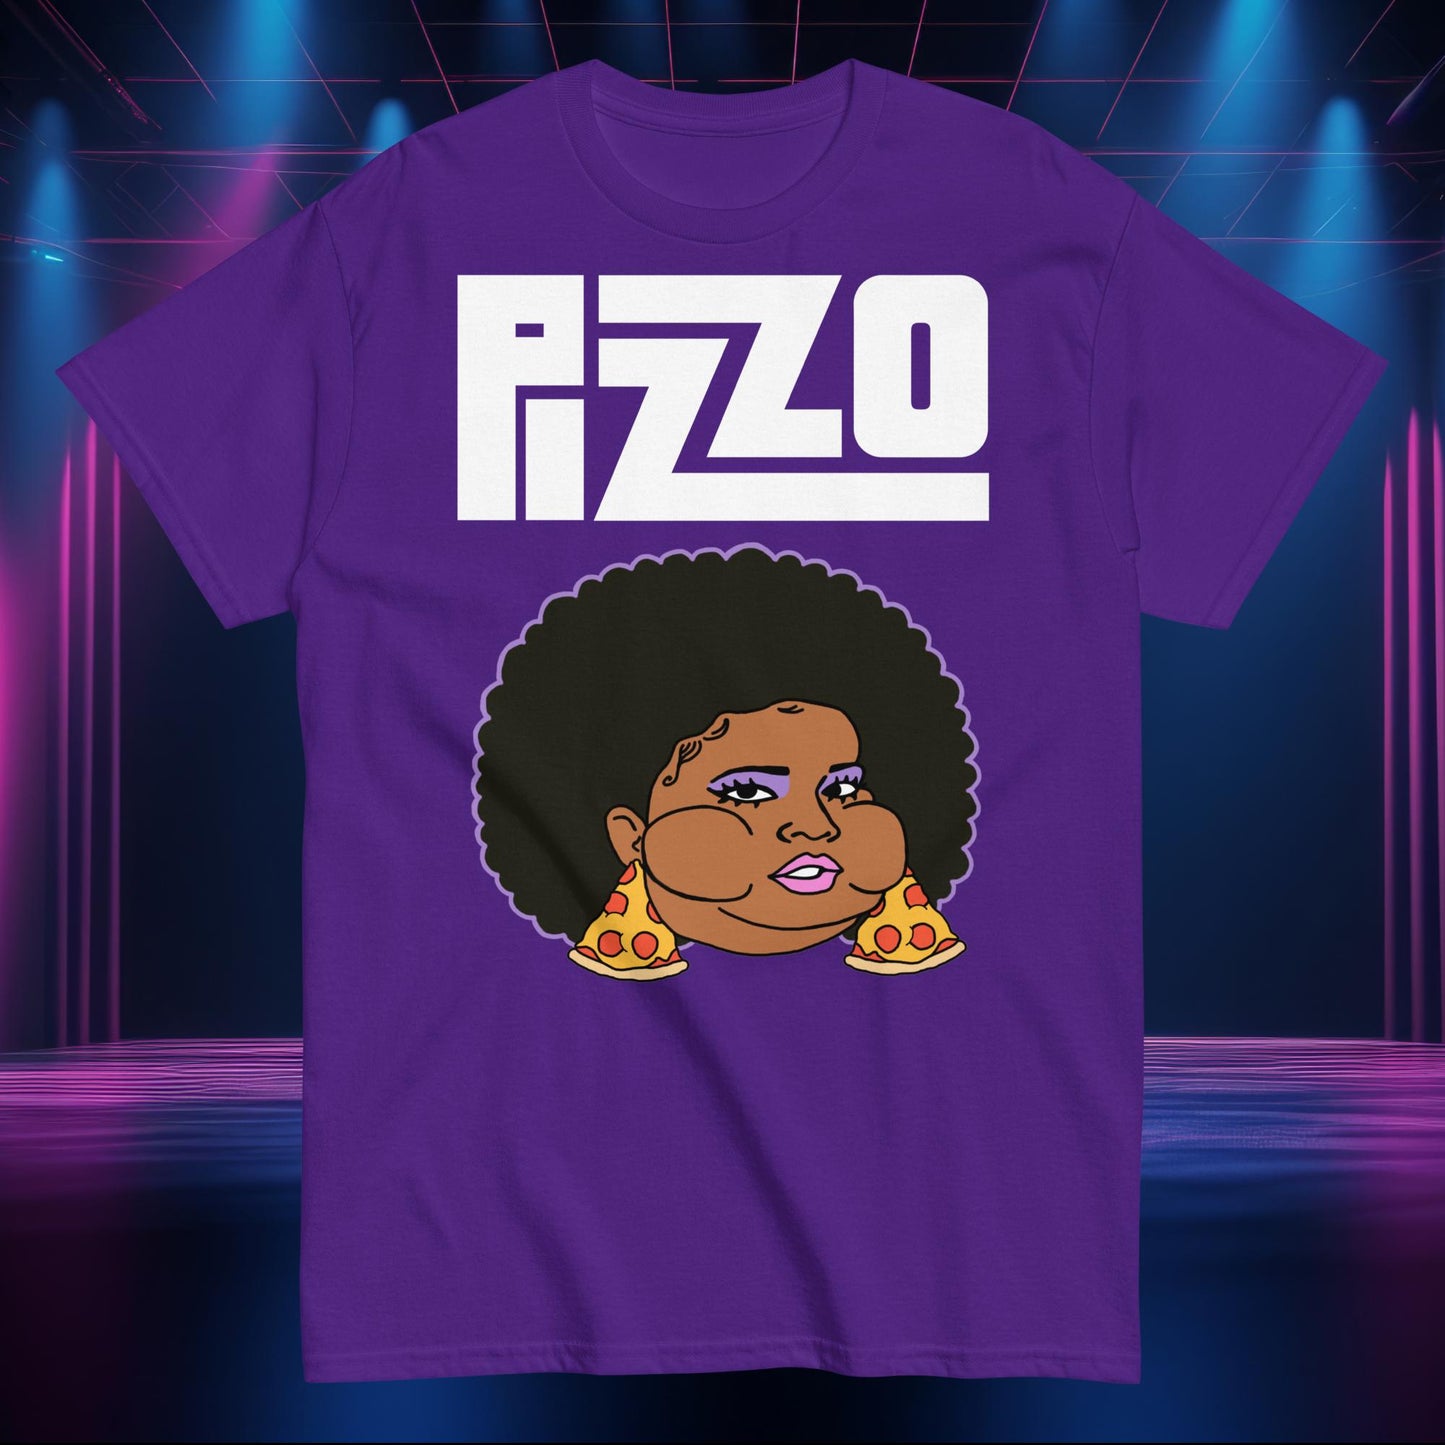 Pizzo Lizzo Pizza Lizzo Merch Lizzo Gift Body Positivity Body empowerment Lizzo T-shirt Next Cult Brand